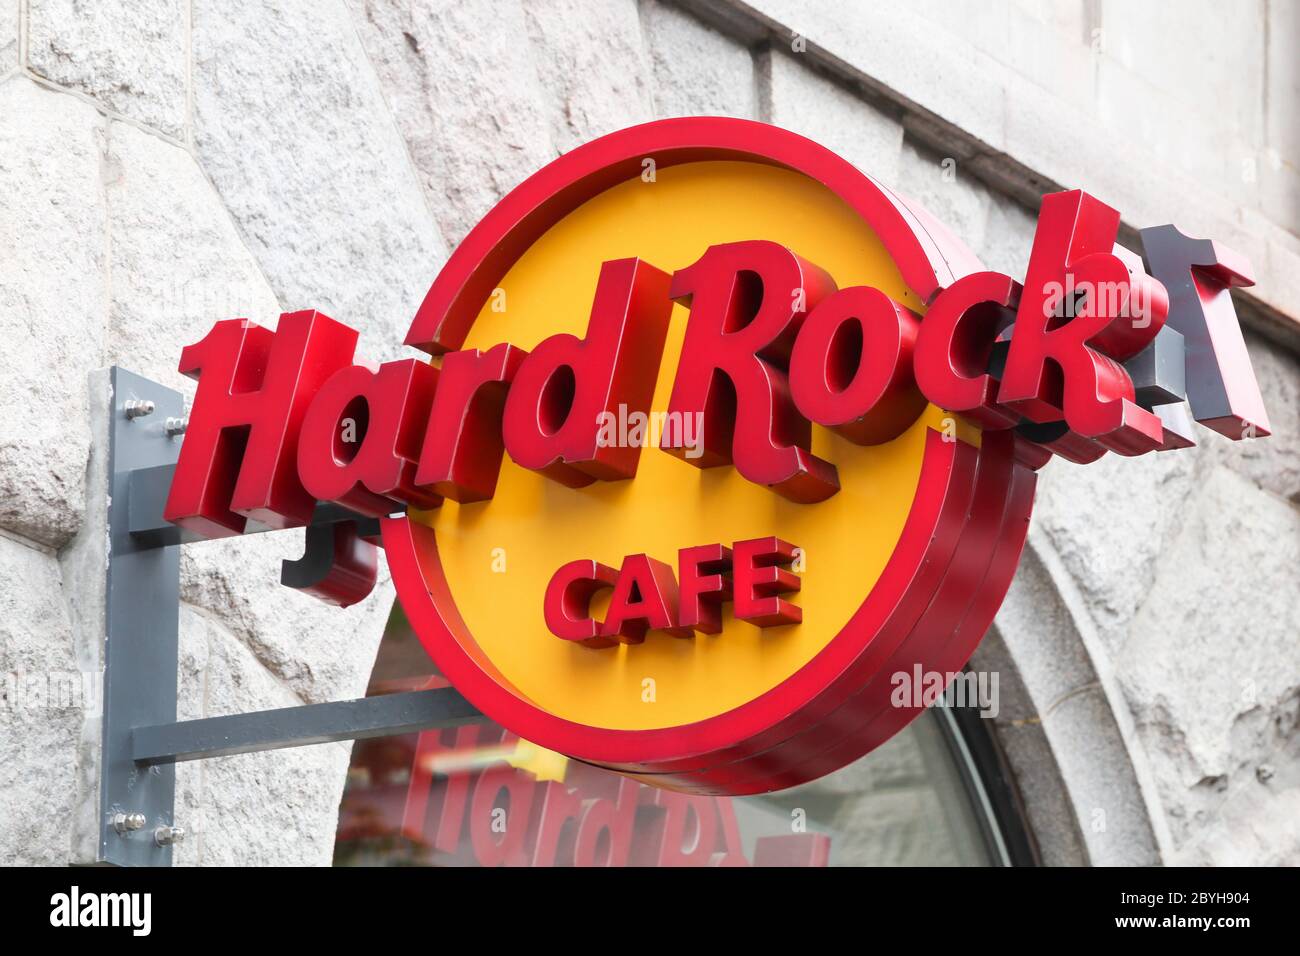 Copenhagen, Denmark - August 28, 2018: Hard rock cafe logo on wall in Copenhagen. Hard Rock Cafe Inc. is a chain of theme restaurants founded in 1971 Stock Photo